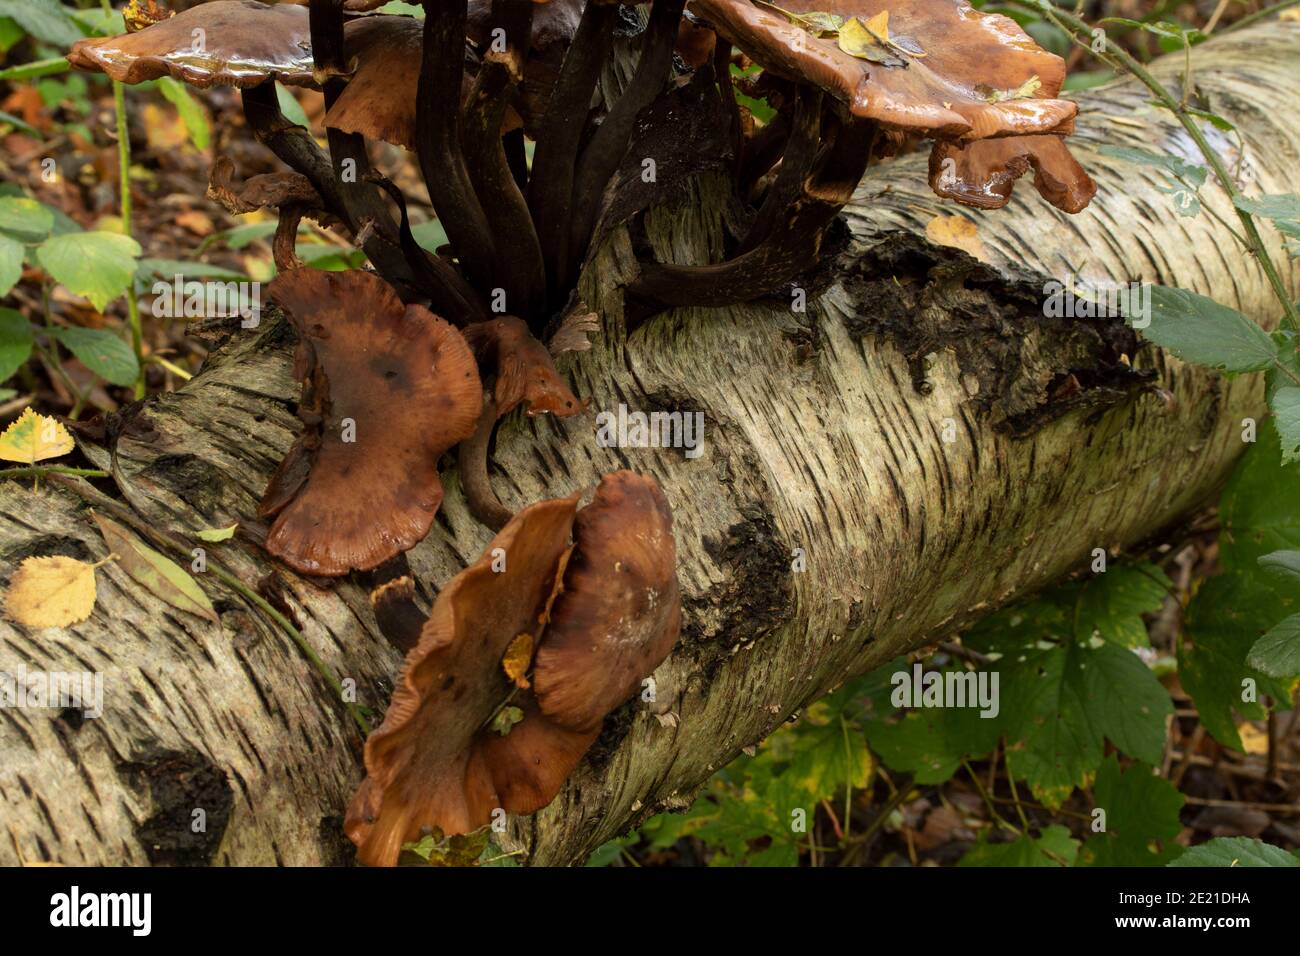 Intime Landschaft von Pilzen explodieren aus einem verfaulenden Baumstumpf, natürliche Umwelt Lebenszyklus von Tod und Zerfall Stockfoto